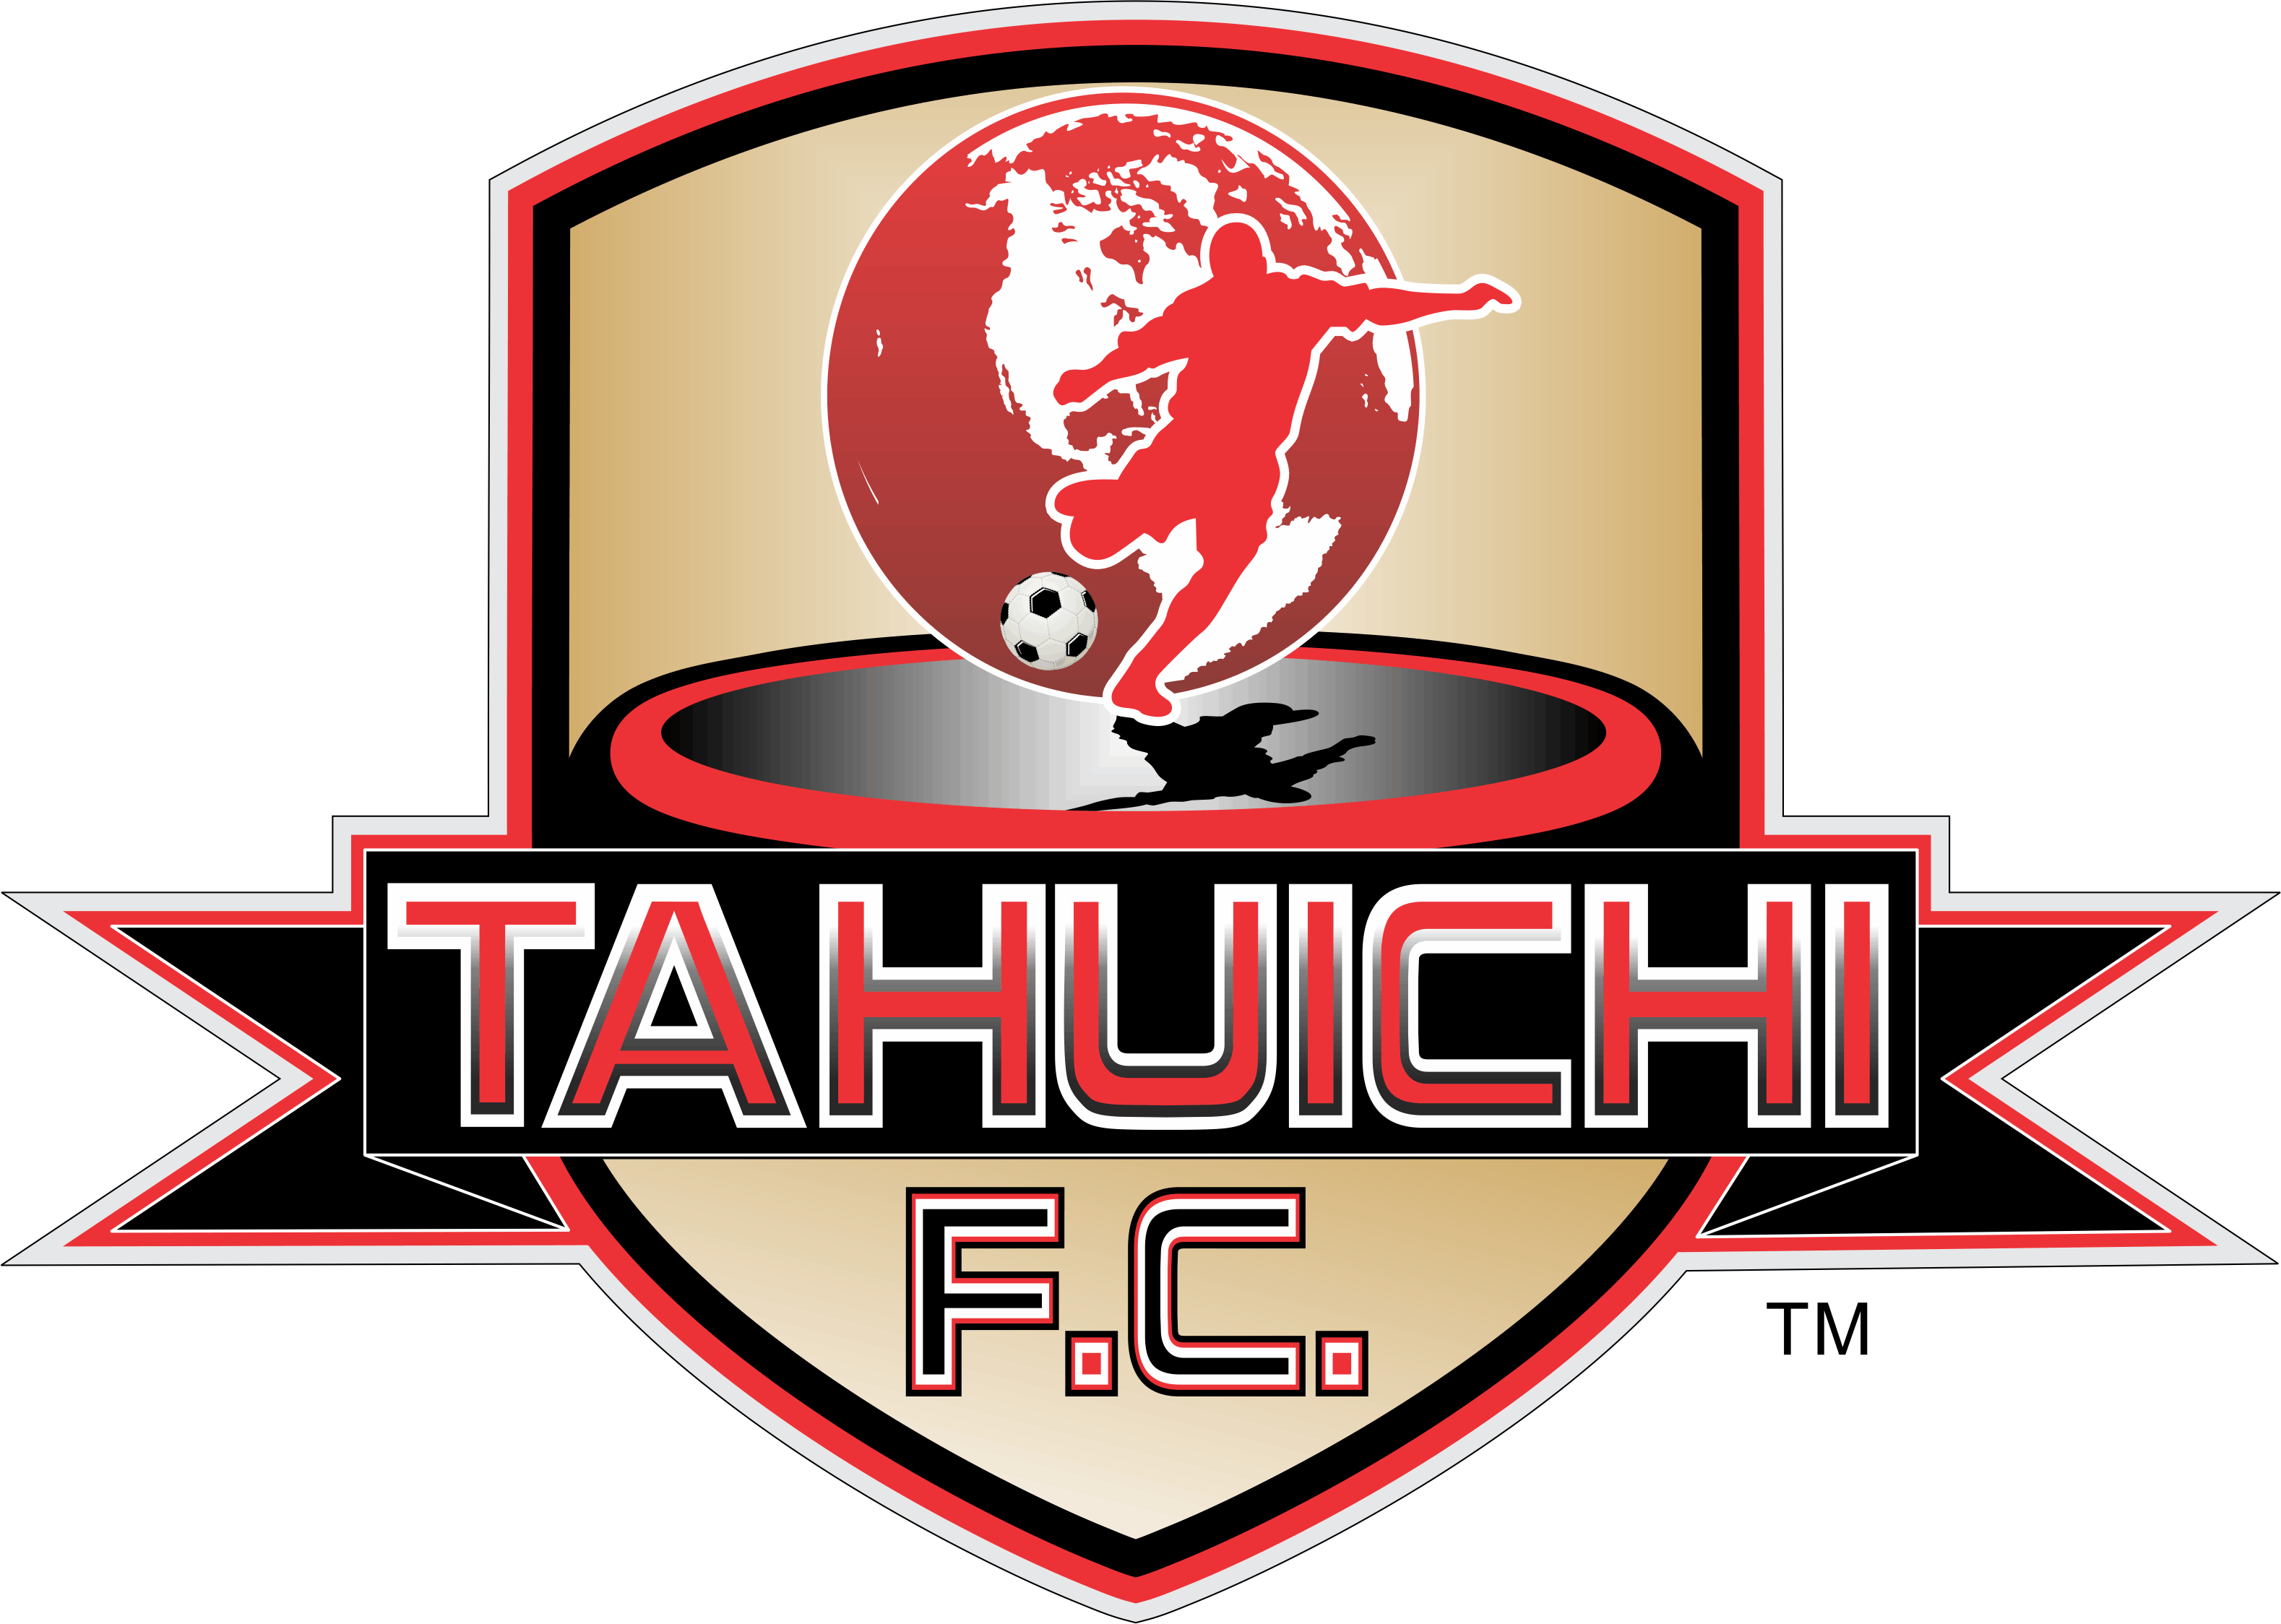 Tahuichi FC team badge